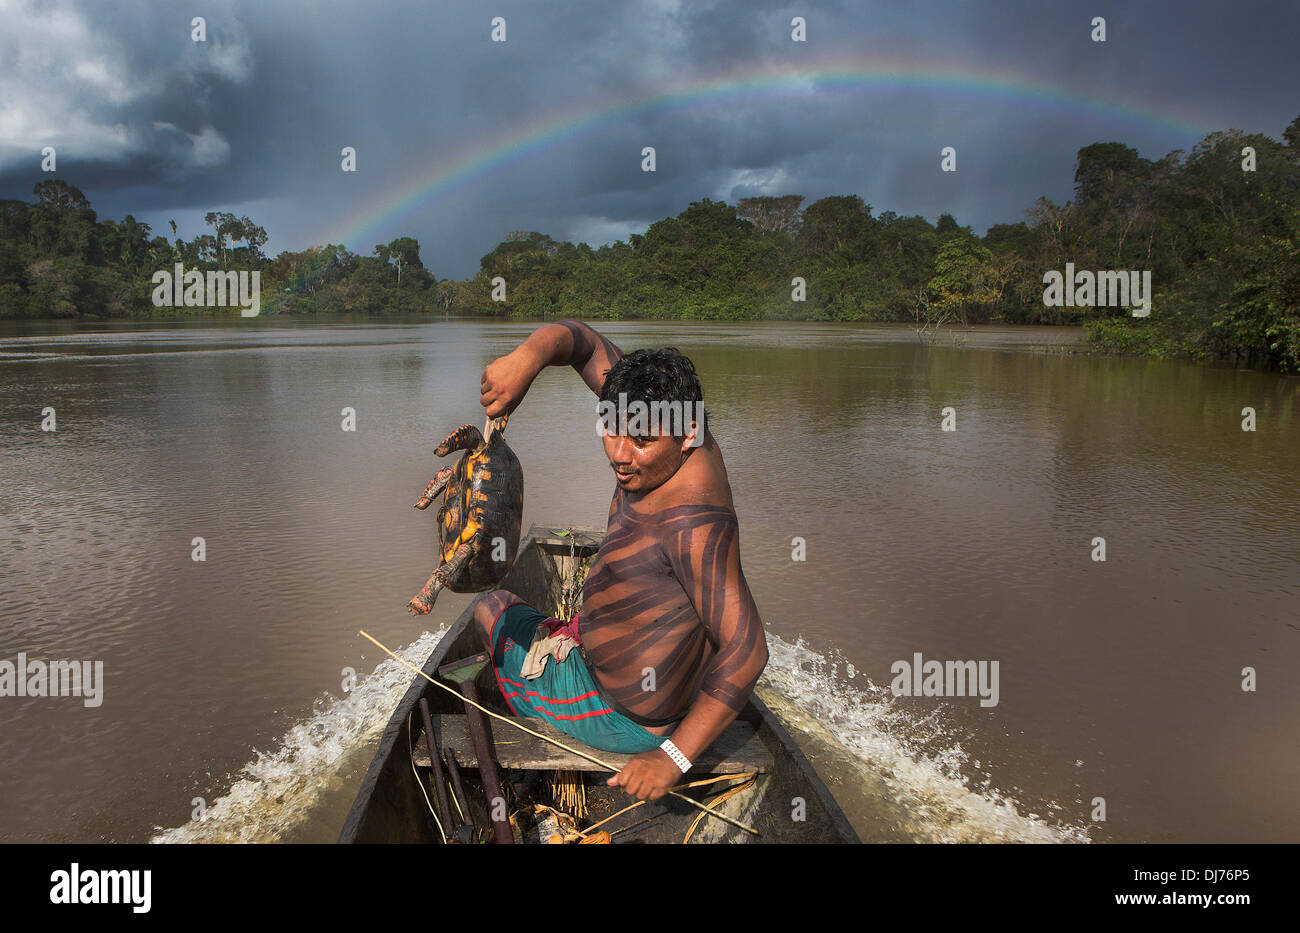 Apr 27, 2013 - Poti-Kro, Pará, Brasil - Kroire, un guerrero de Poti-Kro, devoluciones de un exitoso viaje de caza con jabuti, o tortugas terrestres. Los lugareños suelen tomar barcos a diferentes partes de la selva para evitar la caza cualquier área. Las personas viven en el Xikrin Bacaja, un afluente del río Xingu, donde la construcción de la represa Belo Monte está alcanzando picos de construcción. Algunos científicos advierten que el nivel del agua de la Bacaja disminuirá vertiginosamente debido a la presa. (Crédito de la Imagen: © Taylor Weidman/Cable/ZUMAPRESS.com) Zuma. Foto de stock